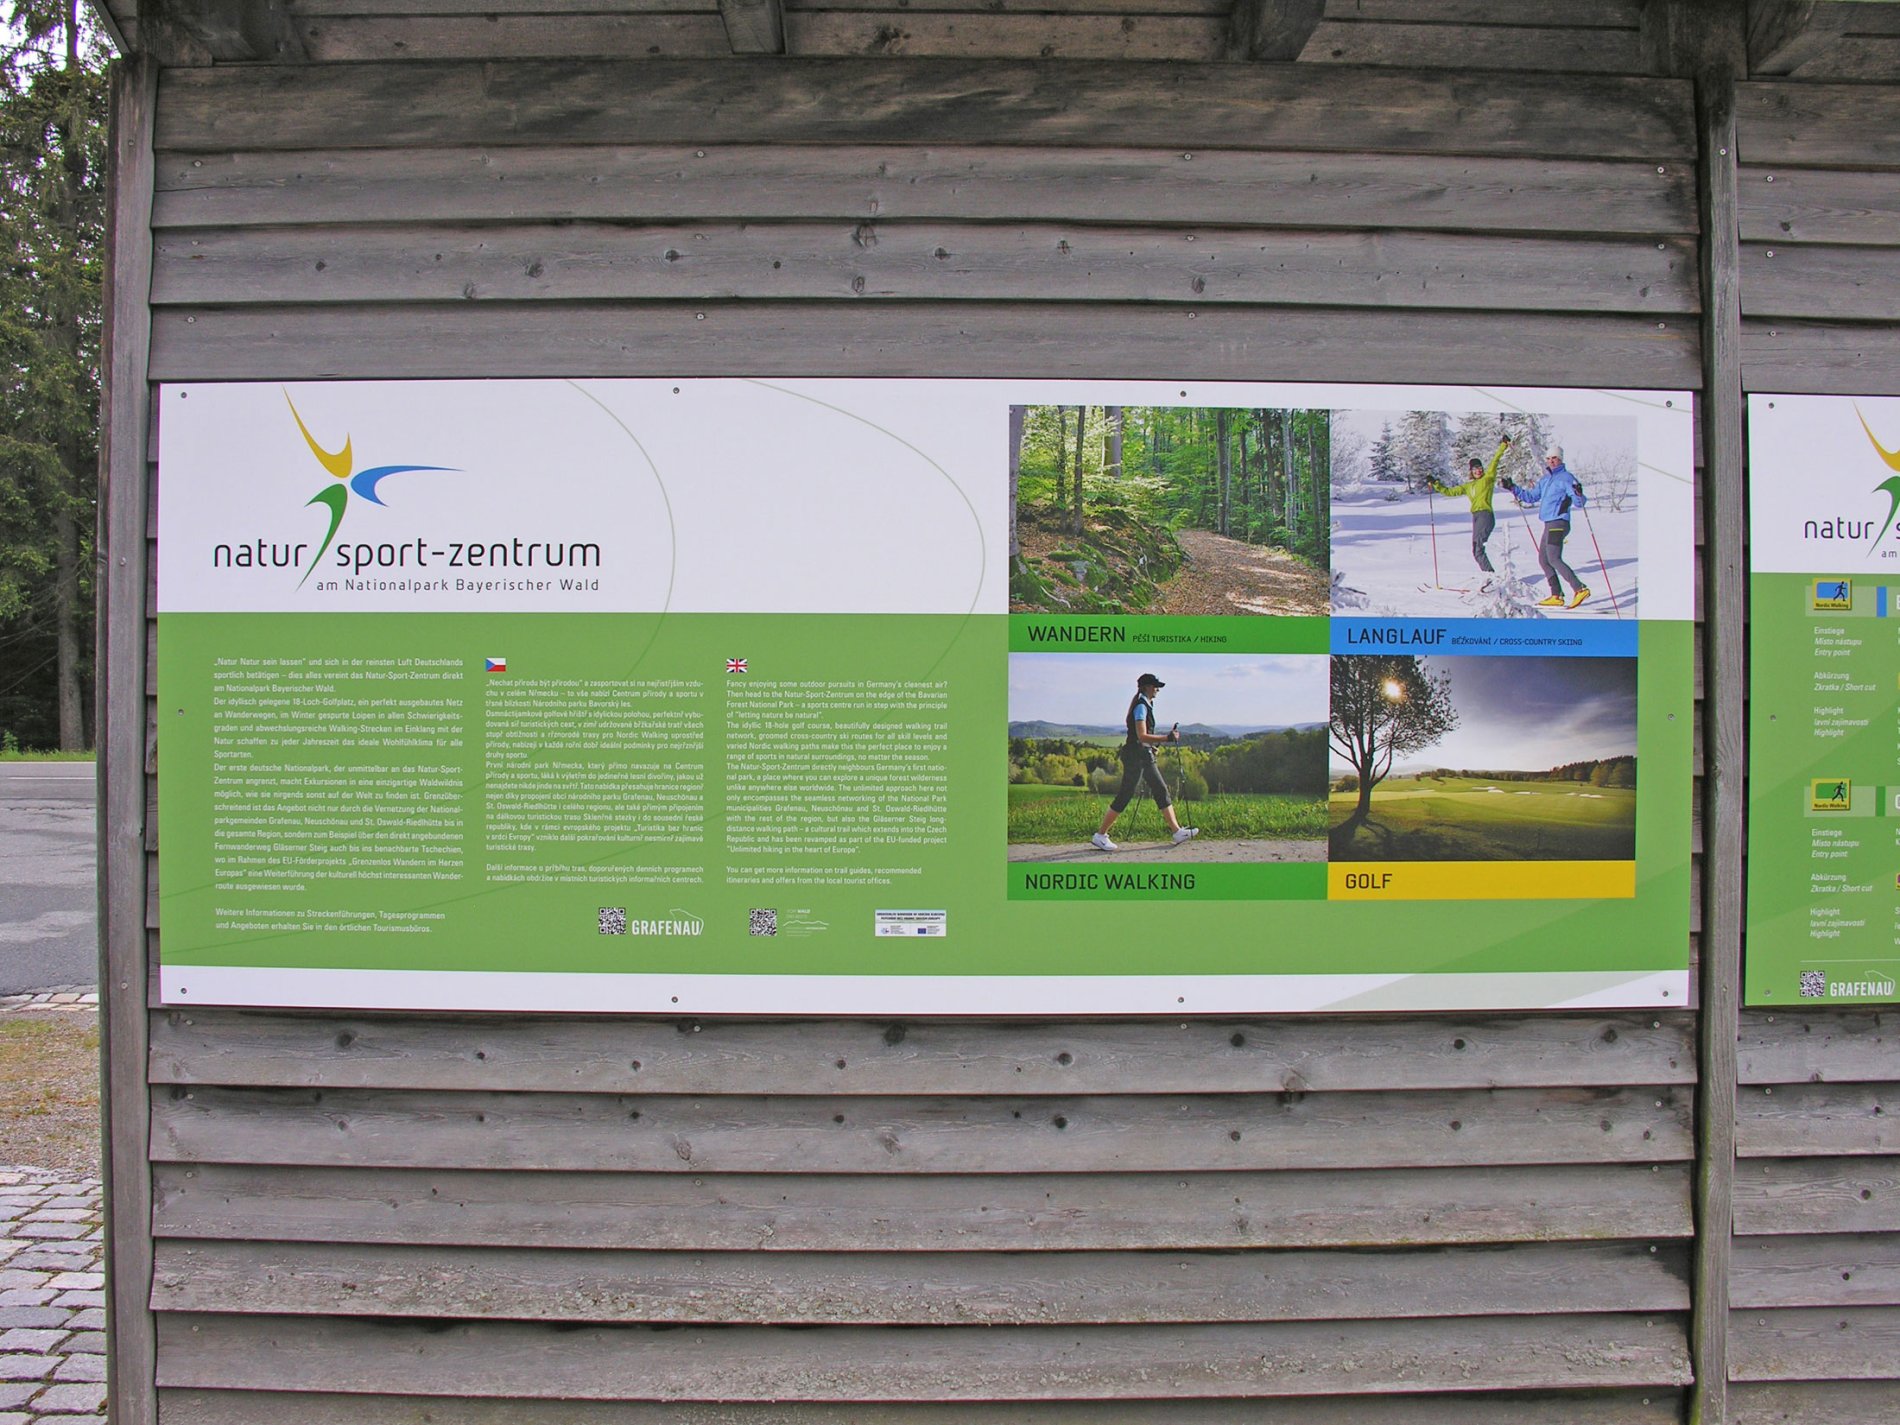 Ein 18-Loch-Golfplatz, ein perfekt ausgebautes Netz an Wanderwegen, im Winter gespurte Loipen in allen Schwierigkeitsgraden und abwechslungsreiche Walking-Strecken im Natur-Sport-Zentrum Nationalpark Bayerischer Wald